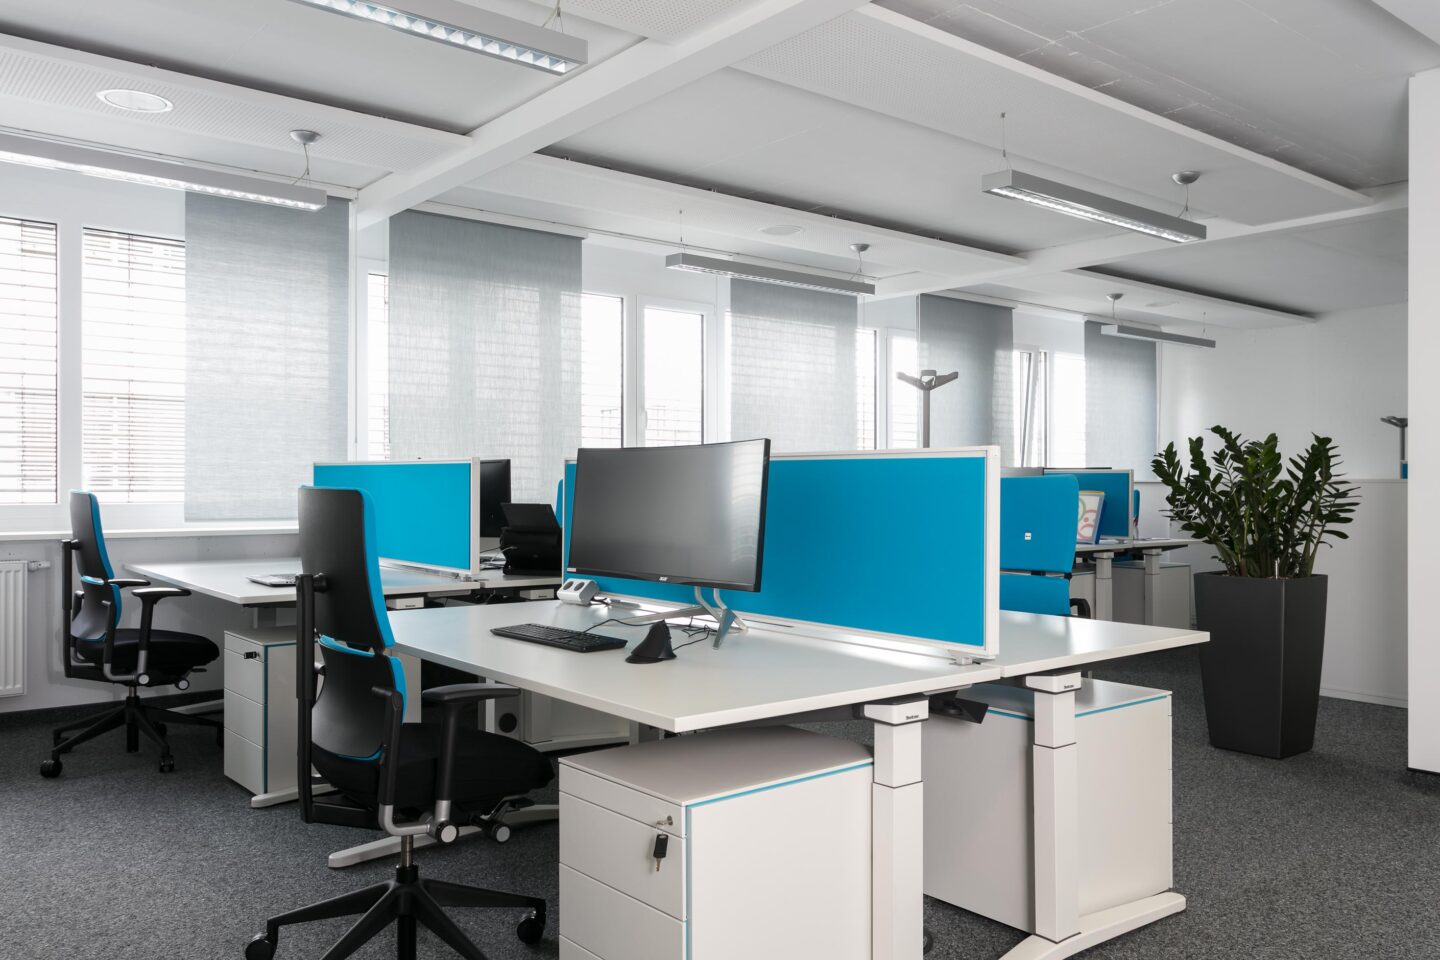 KTE Kerntechnische Entsorgung Karlsruhe │ modern working environment │ electrically height-adjustable desks